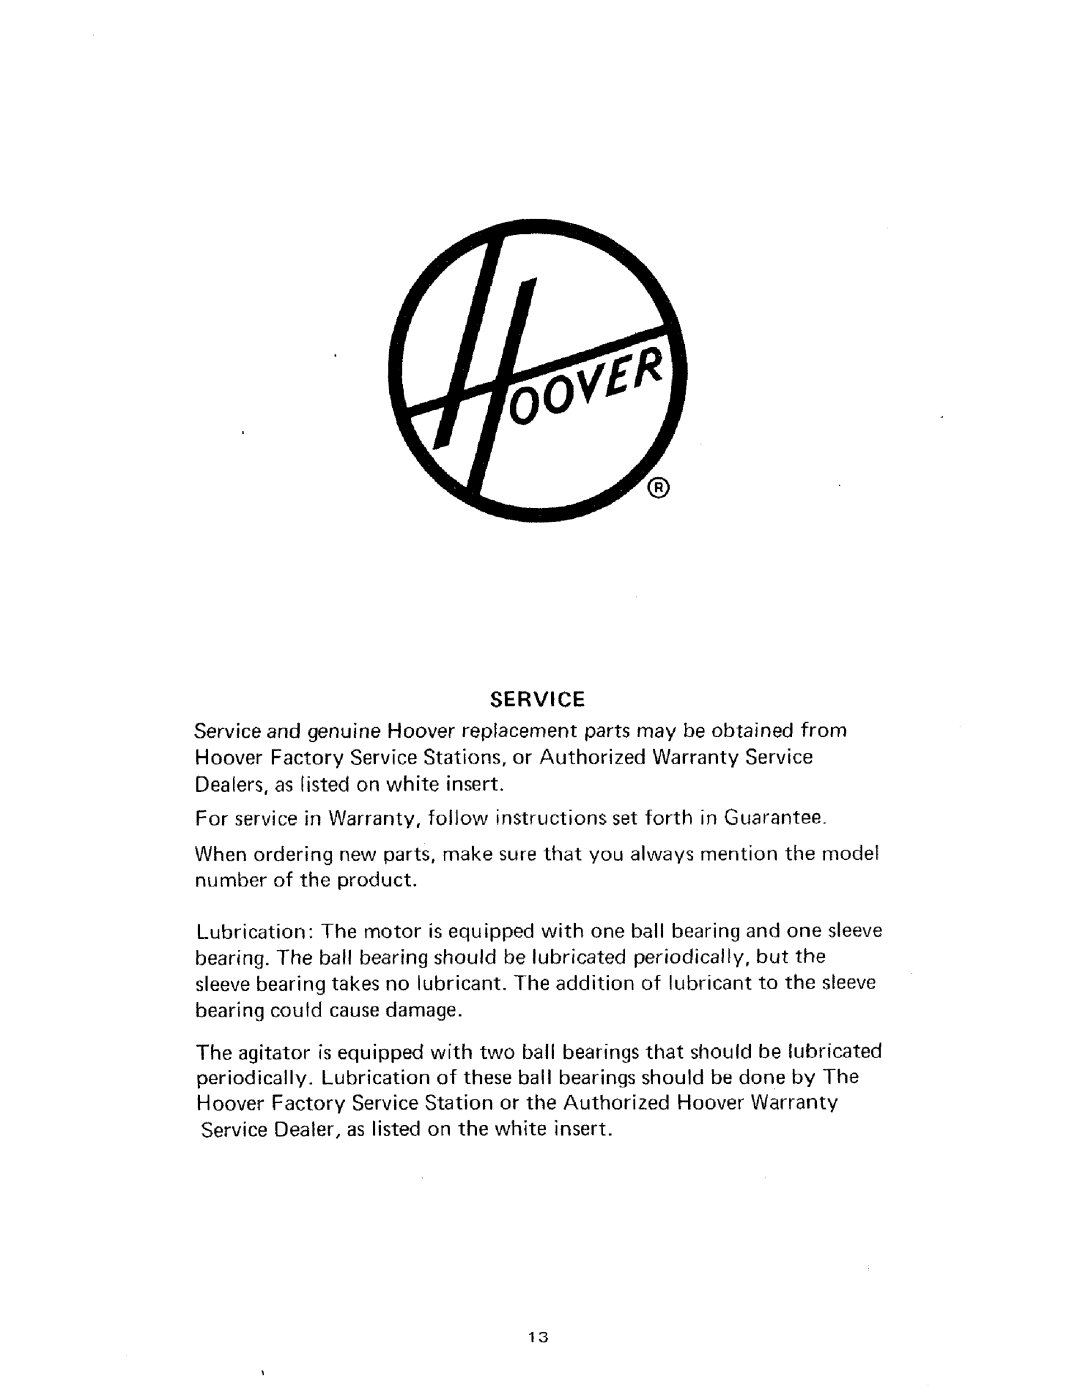 Hoover U4001 owner manual Service 